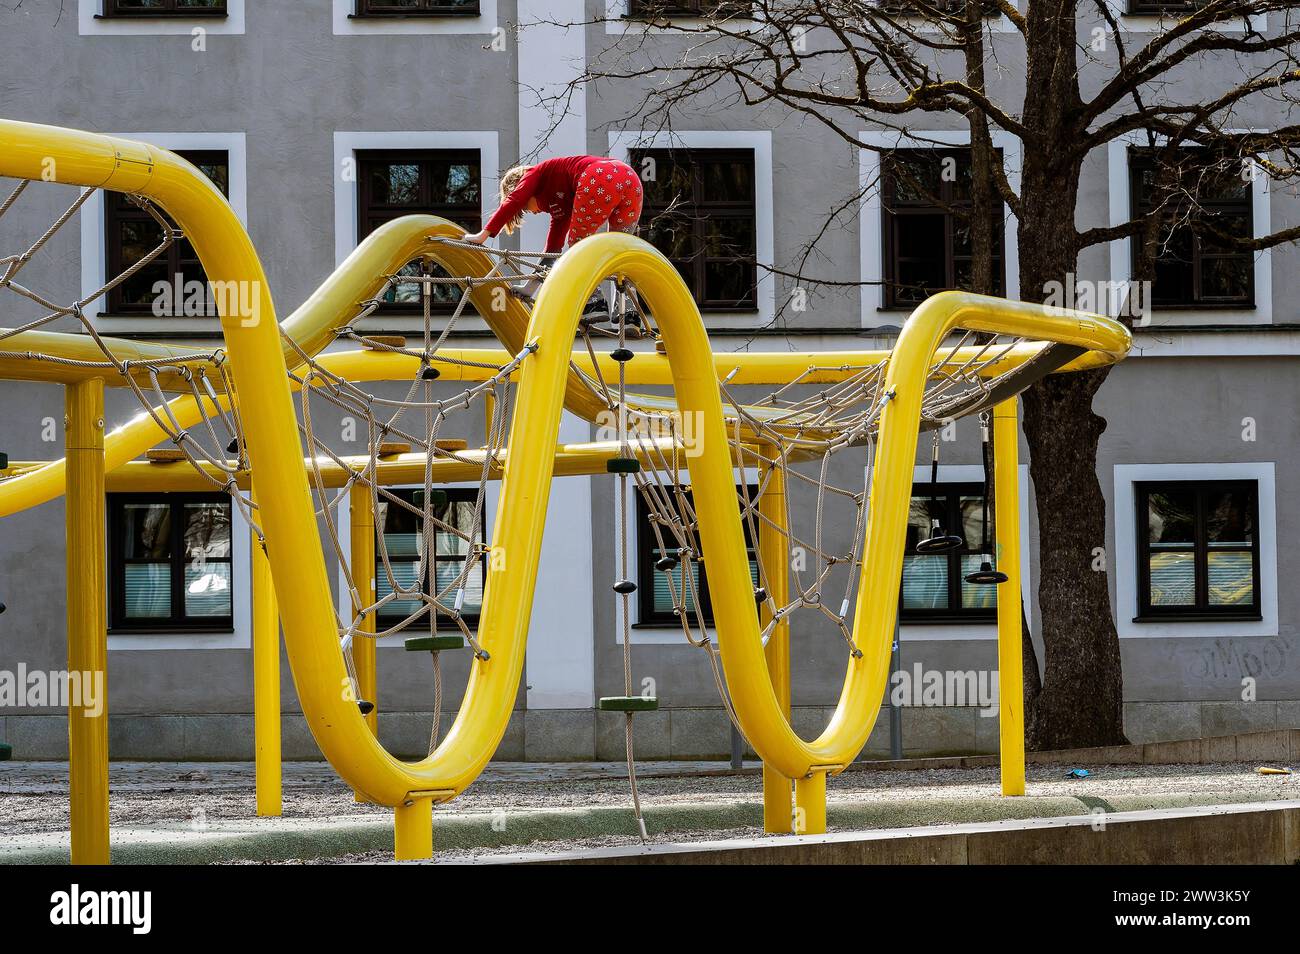 Ponteggi in acciaio con rete, parco giochi per bambini, Kempten, Allgaeu, Baviera, Germania Foto Stock